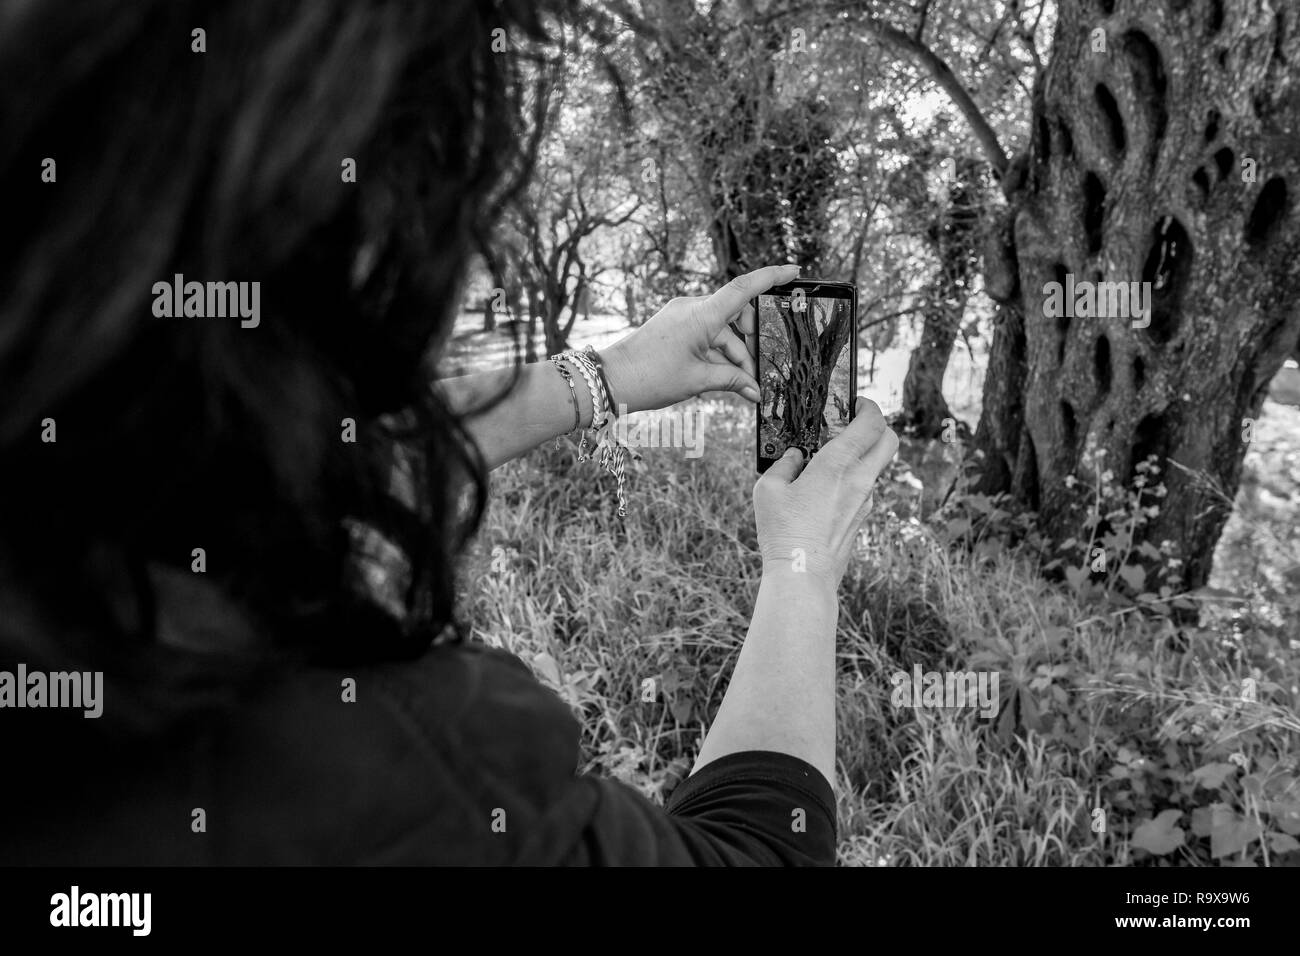 Mains de femmes prenant des photos très beau vieil olivier avec plusieurs cavités dans son tronc. Selective focus sur l'écran du smartphone, noir et w Banque D'Images